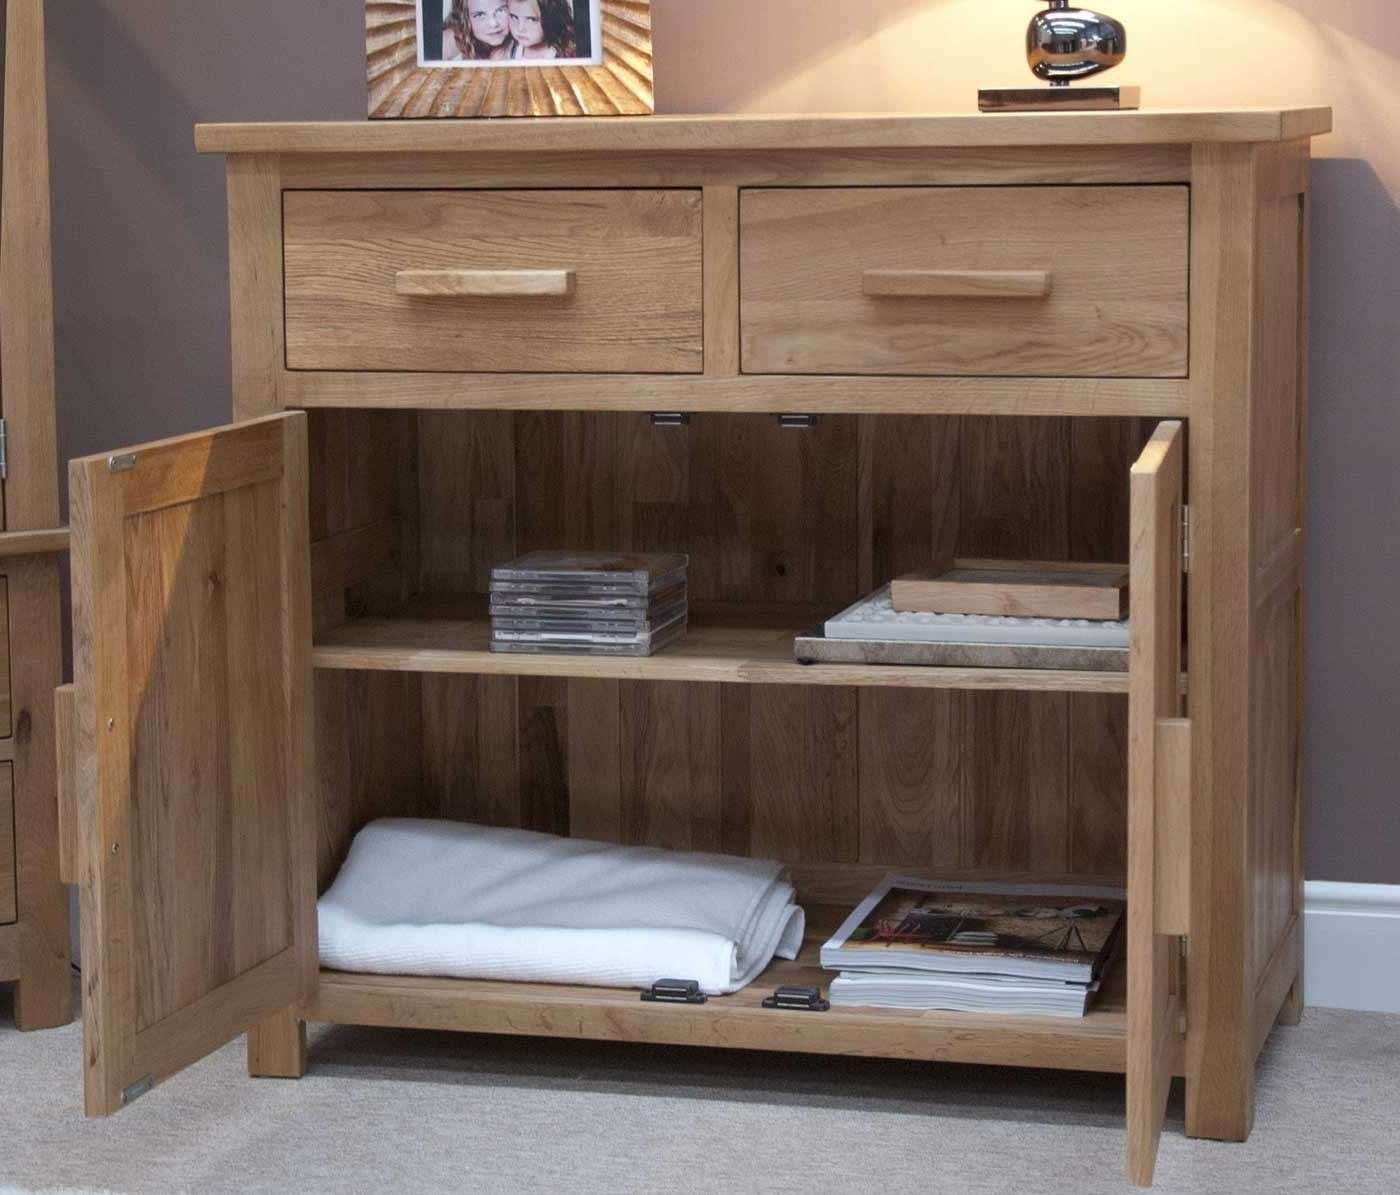 Opus Oak Small Sideboard | Modern Oak Small Sideboard | Furniture With Regard To Small Sideboards (Gallery 19 of 20)